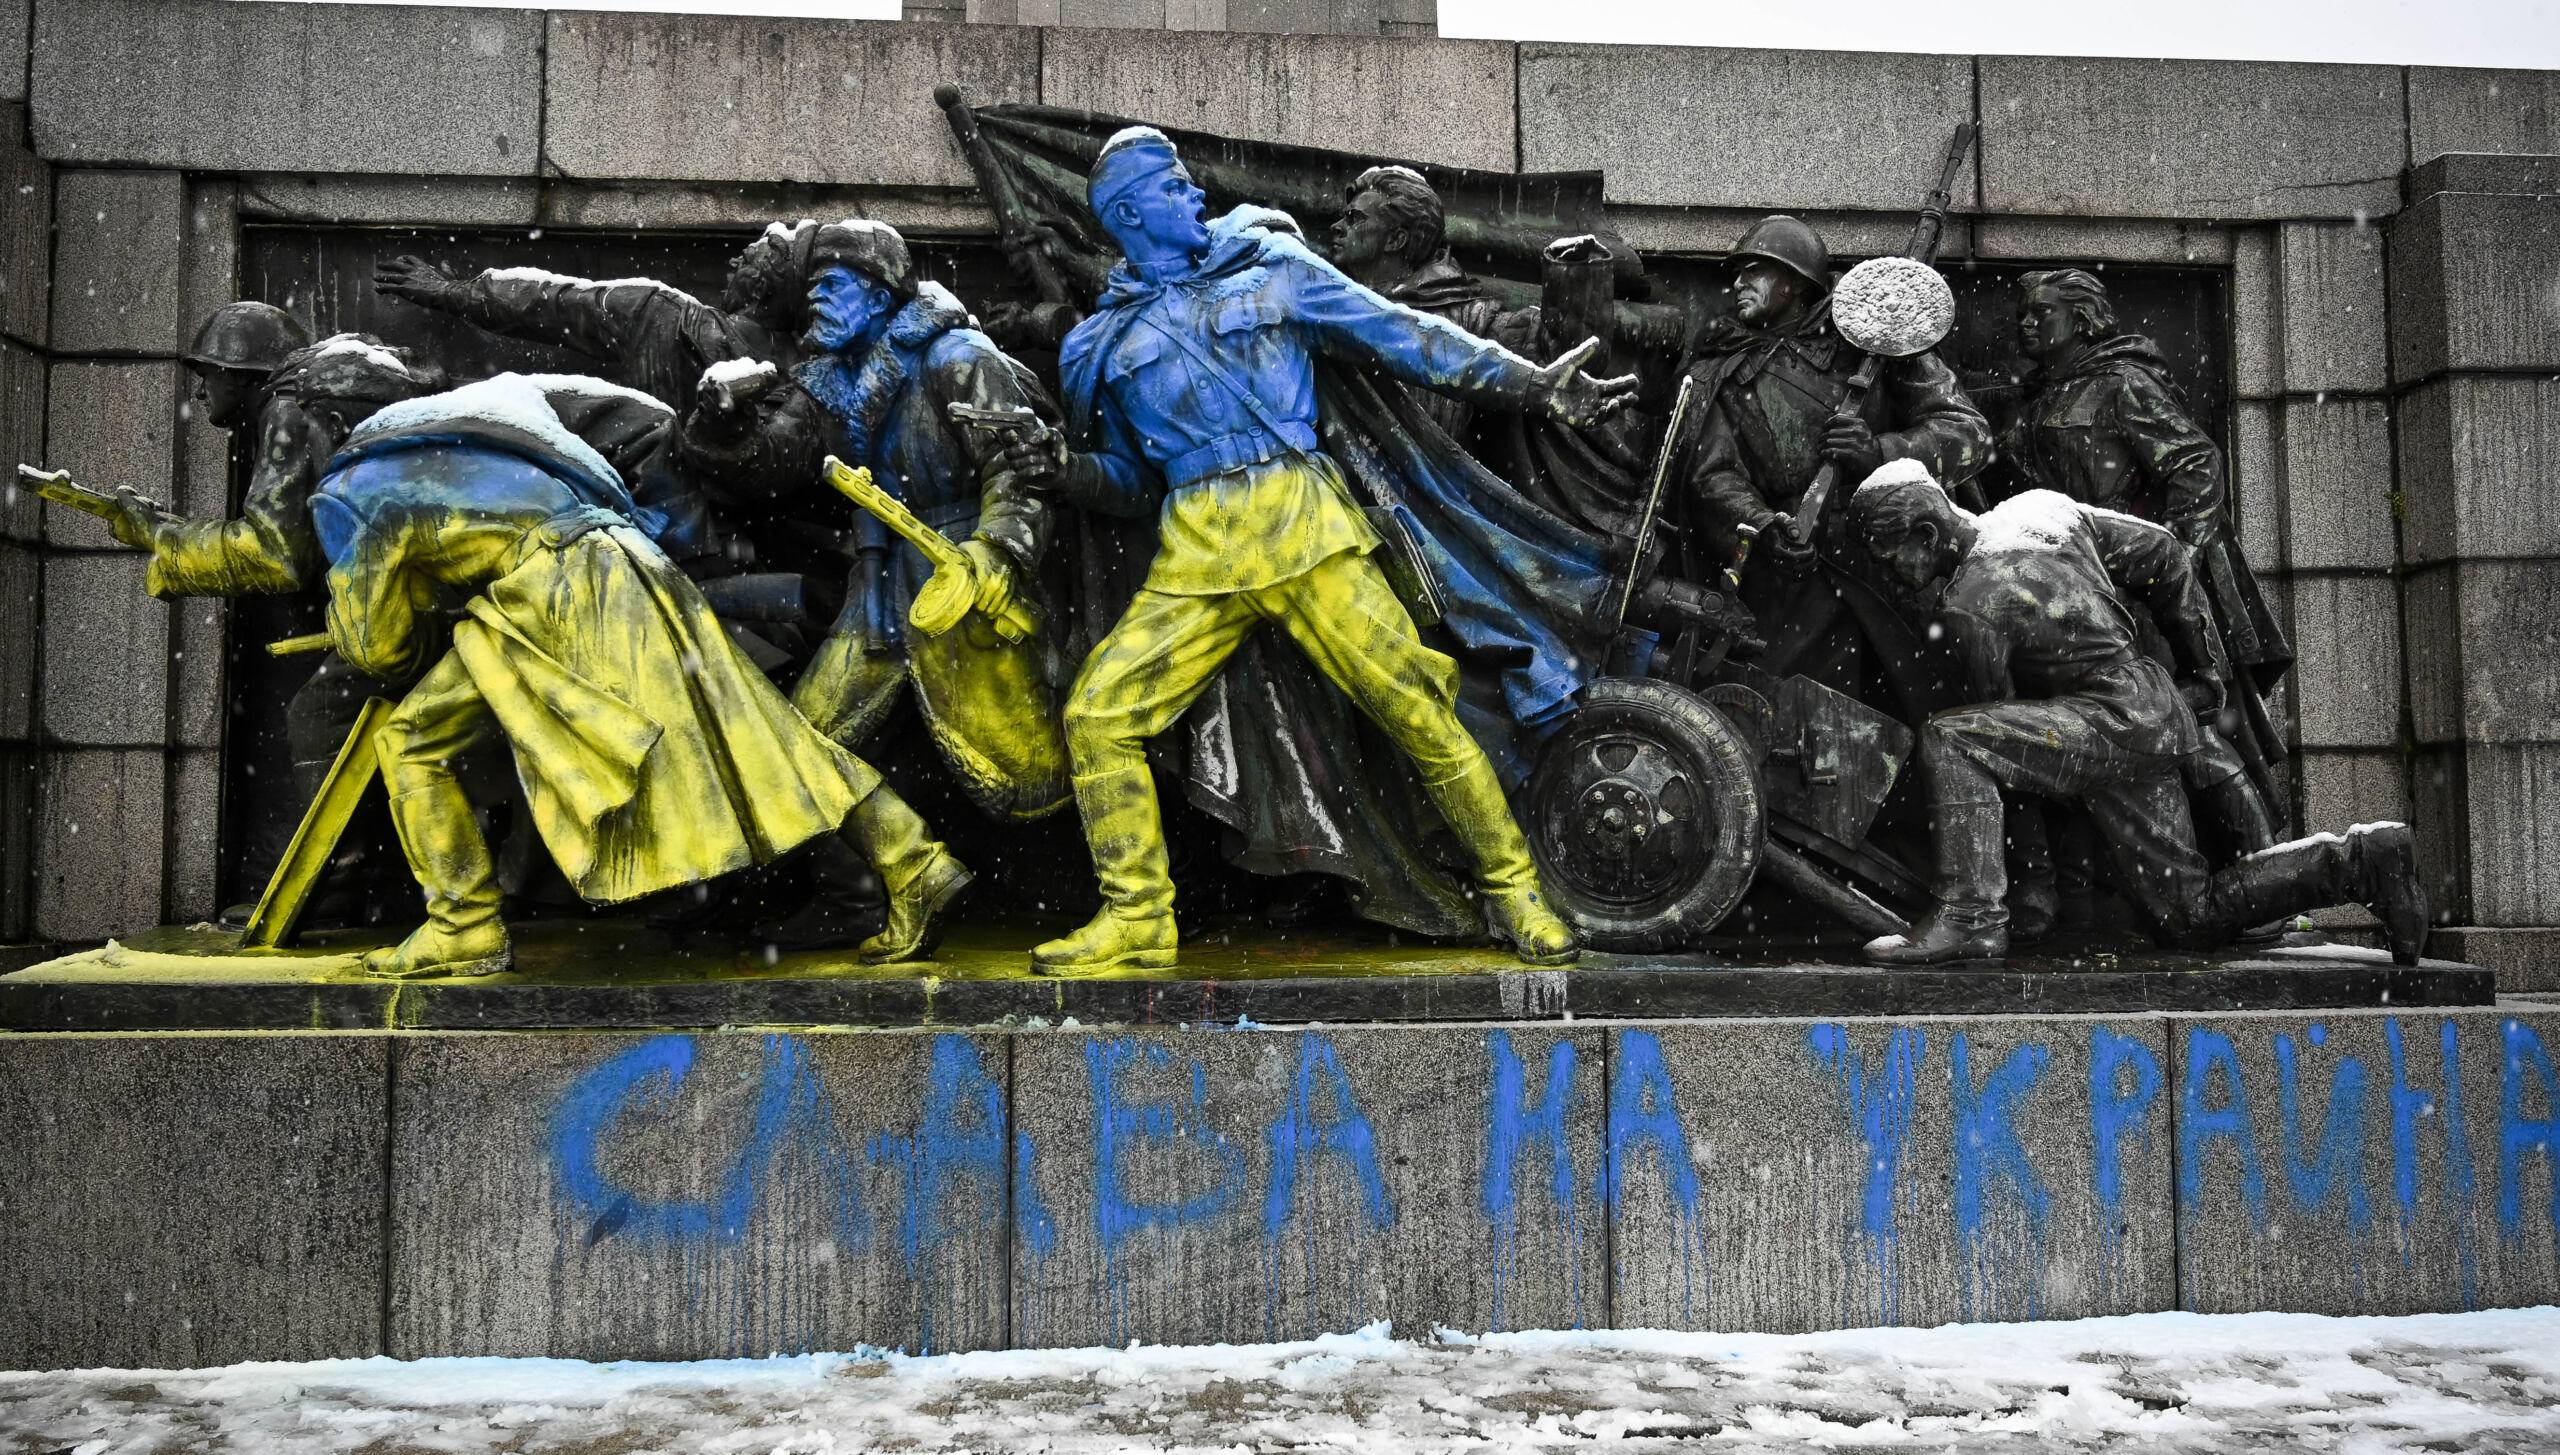 Pomnik sowieckich żołnierzy przemalowany w kolorach Ukrainy (niebieskim i żółtym)